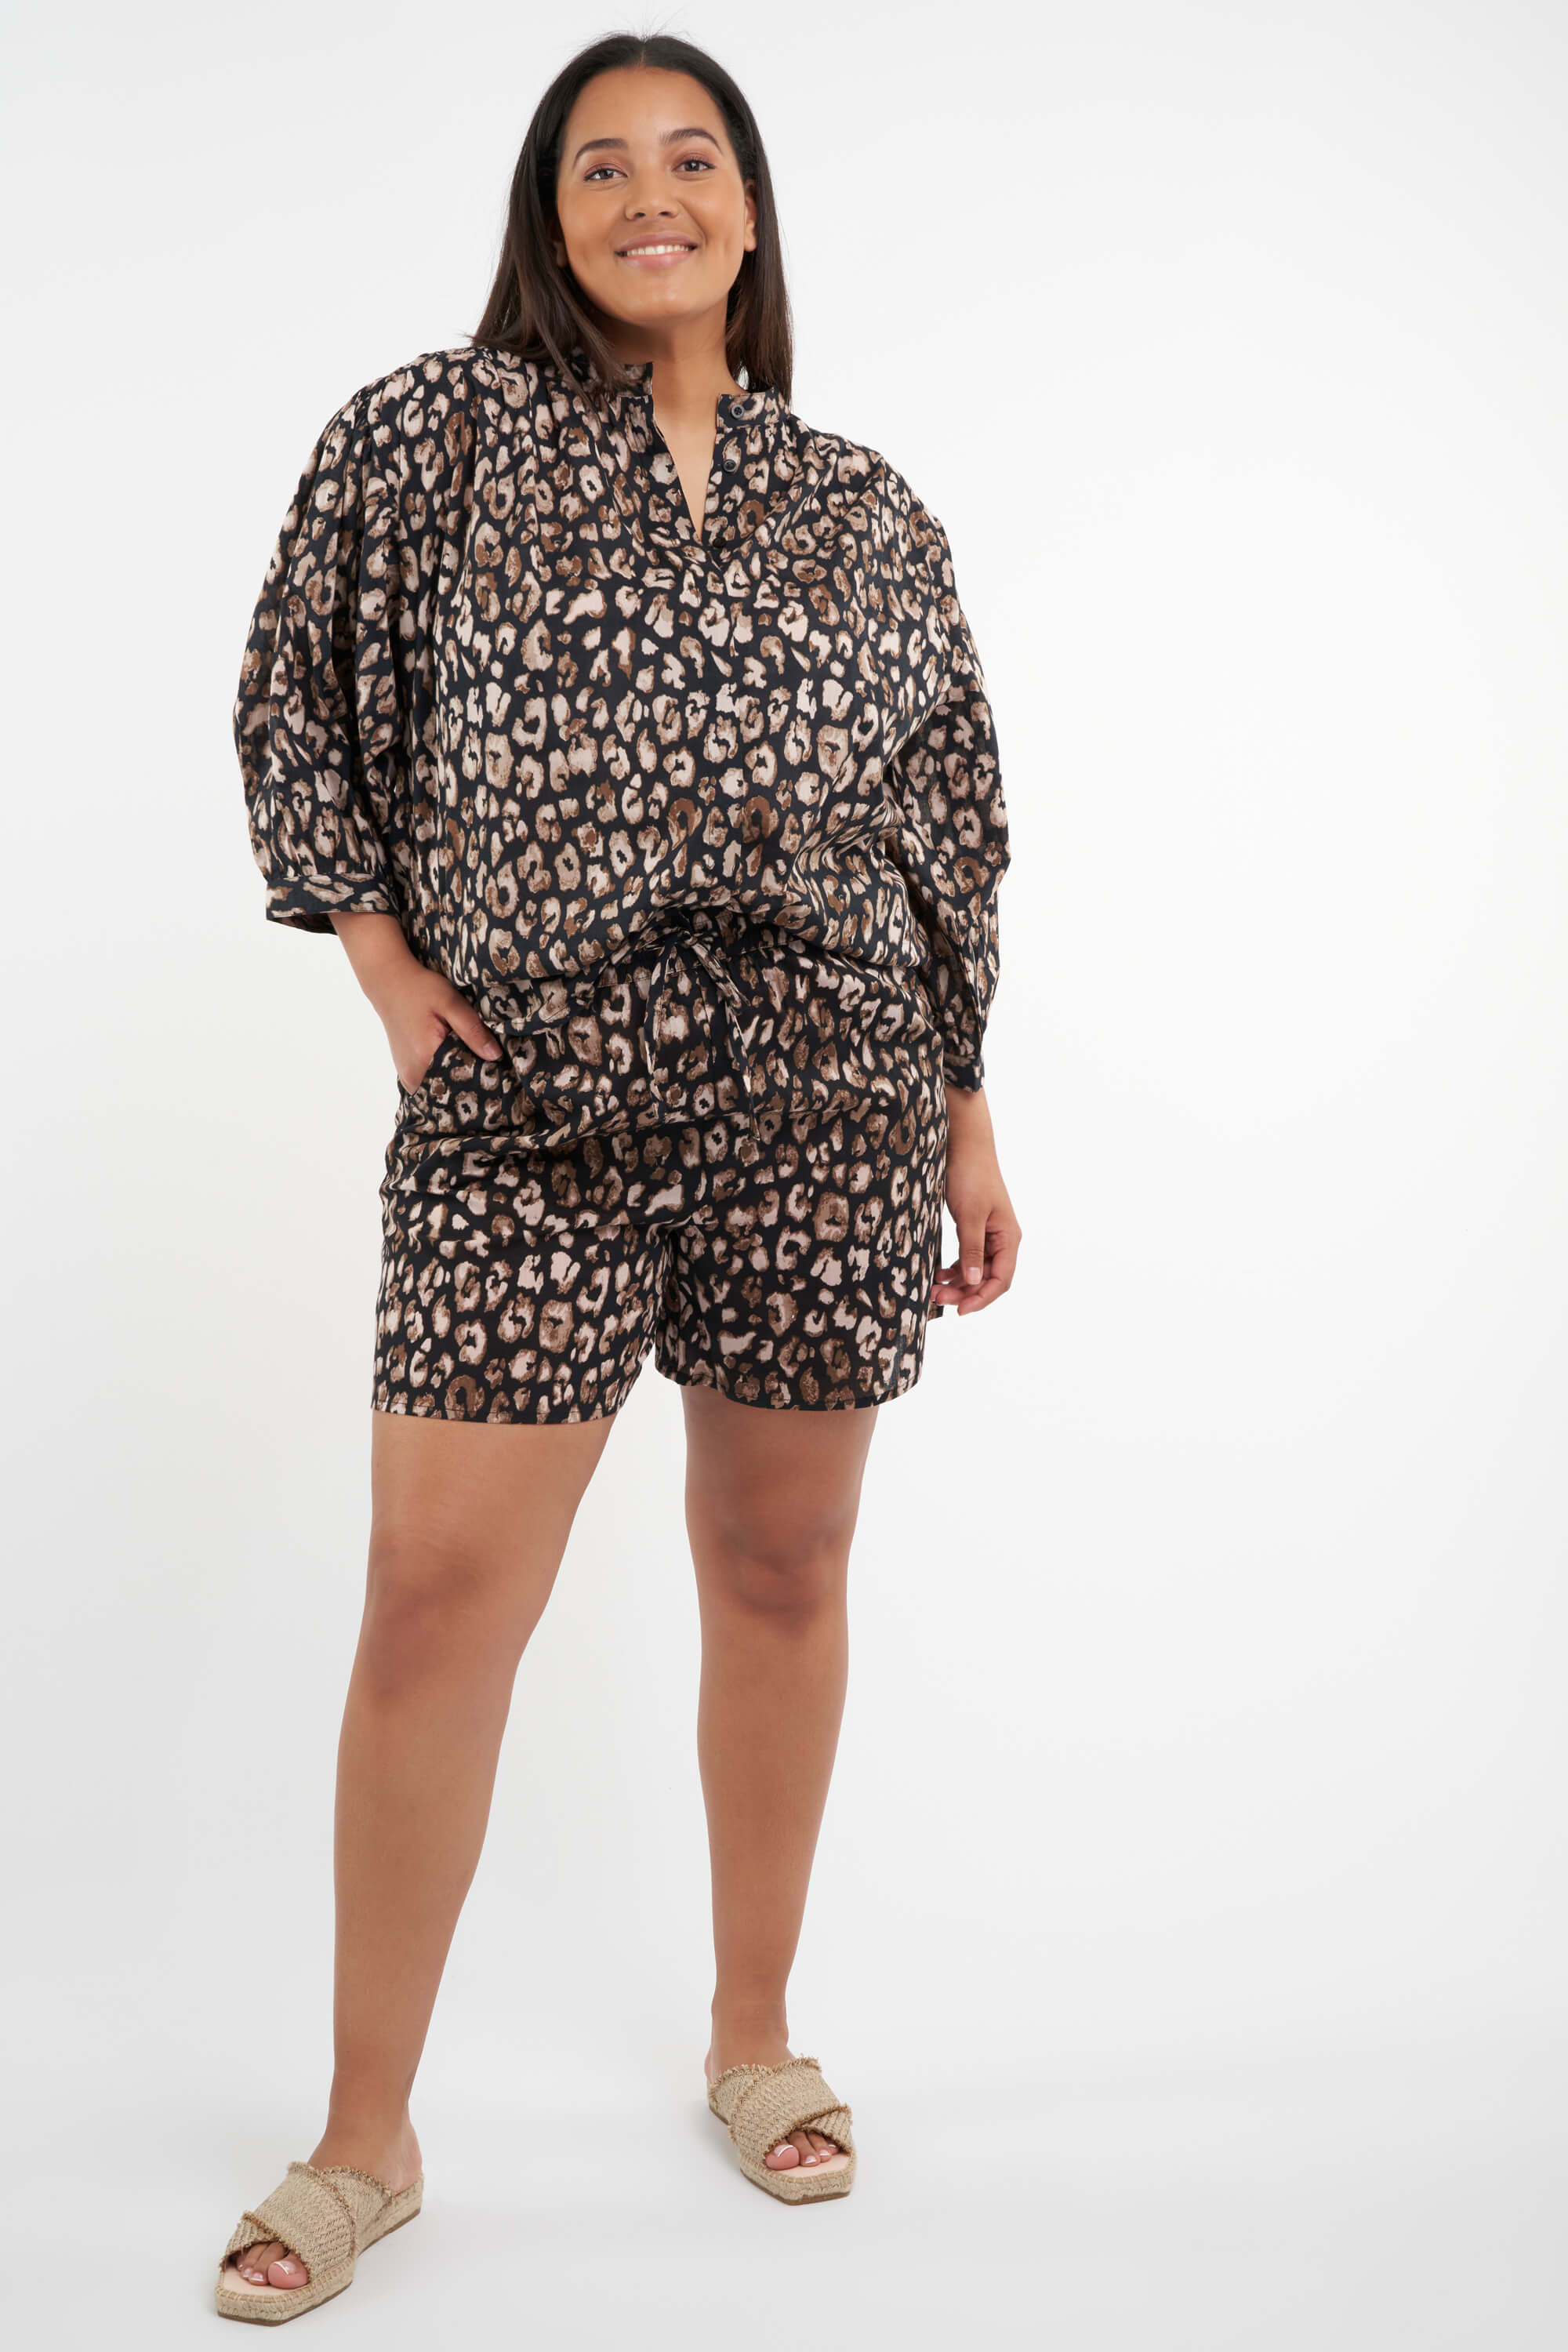 Blusa con estampado de leopardo image 4